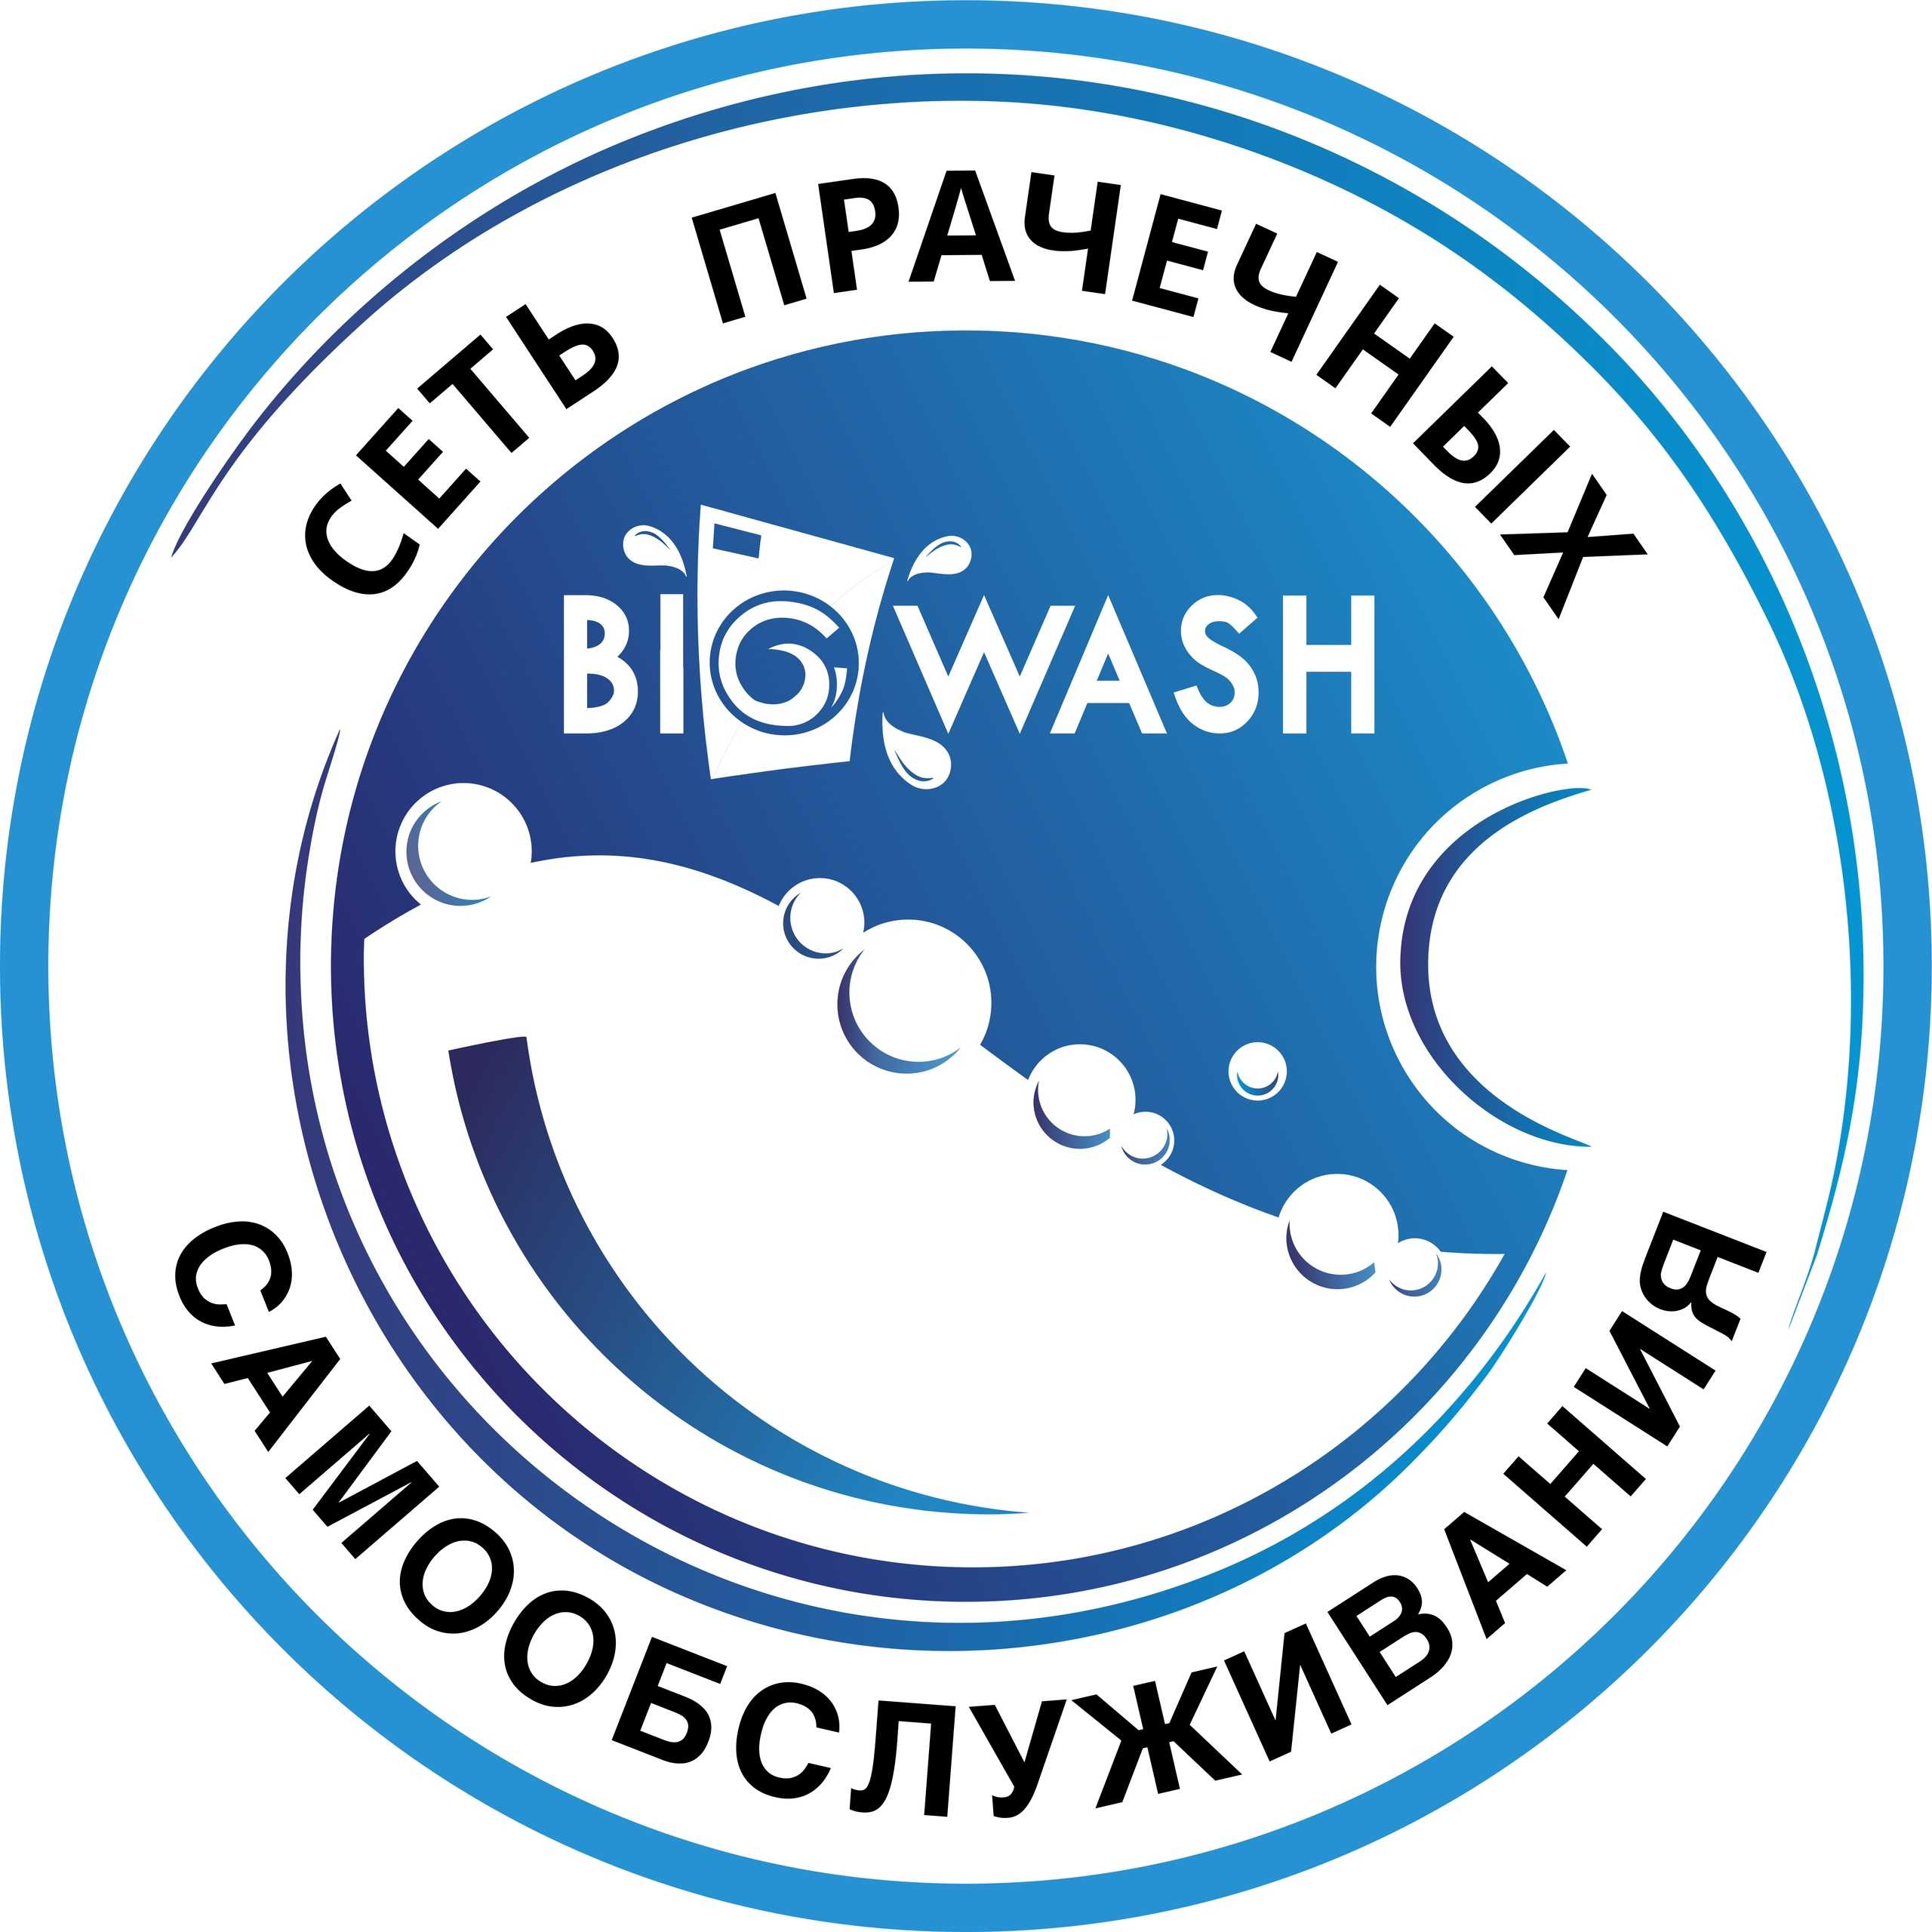 Купить франшизу сети прачечных самообслуживания BIG WASH франчайзинг предложение стоимость размер инвестиций условия открытия своего бизнеса Отзывы о франшизе BIG WASH